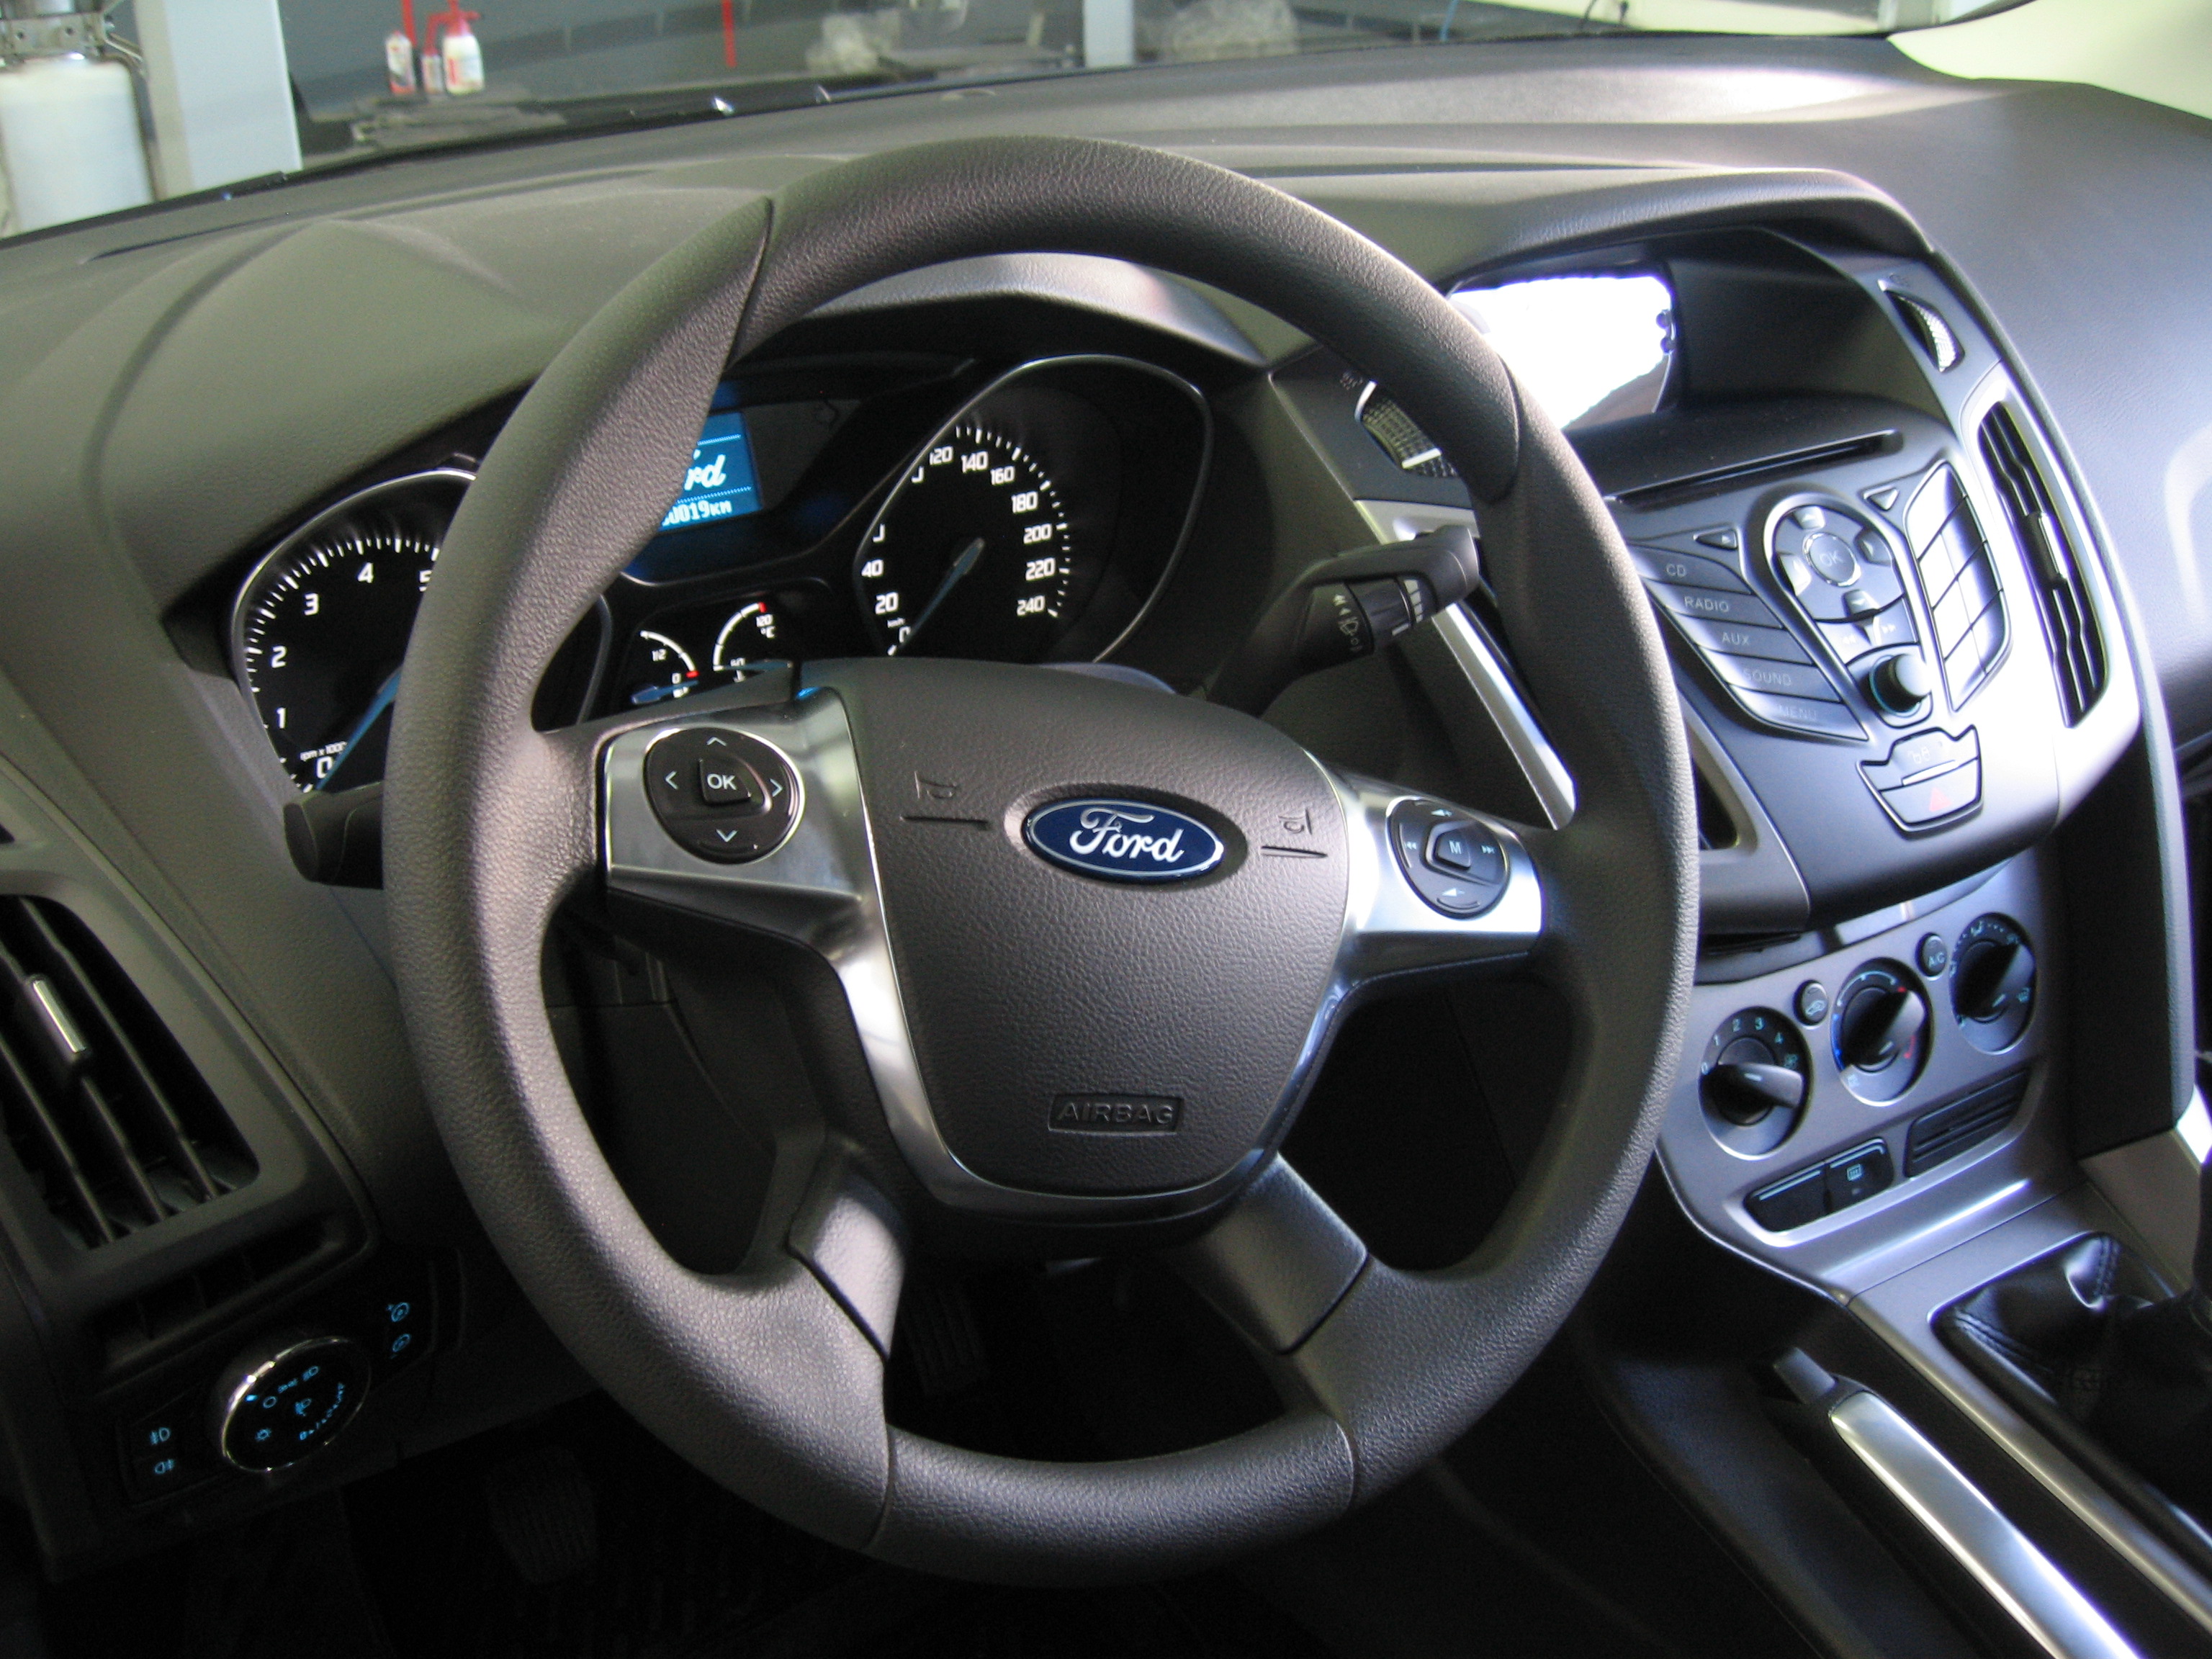 Ford Focus 3 1.6 105 л.с. Ford Focus 3 1.6 Stage 1. Форд фокус 3 хэтчбек 2012 года 1.6 105 л.с подвеска. Форд фокус 3 1.6 105 л.с улучшенные тормоза.